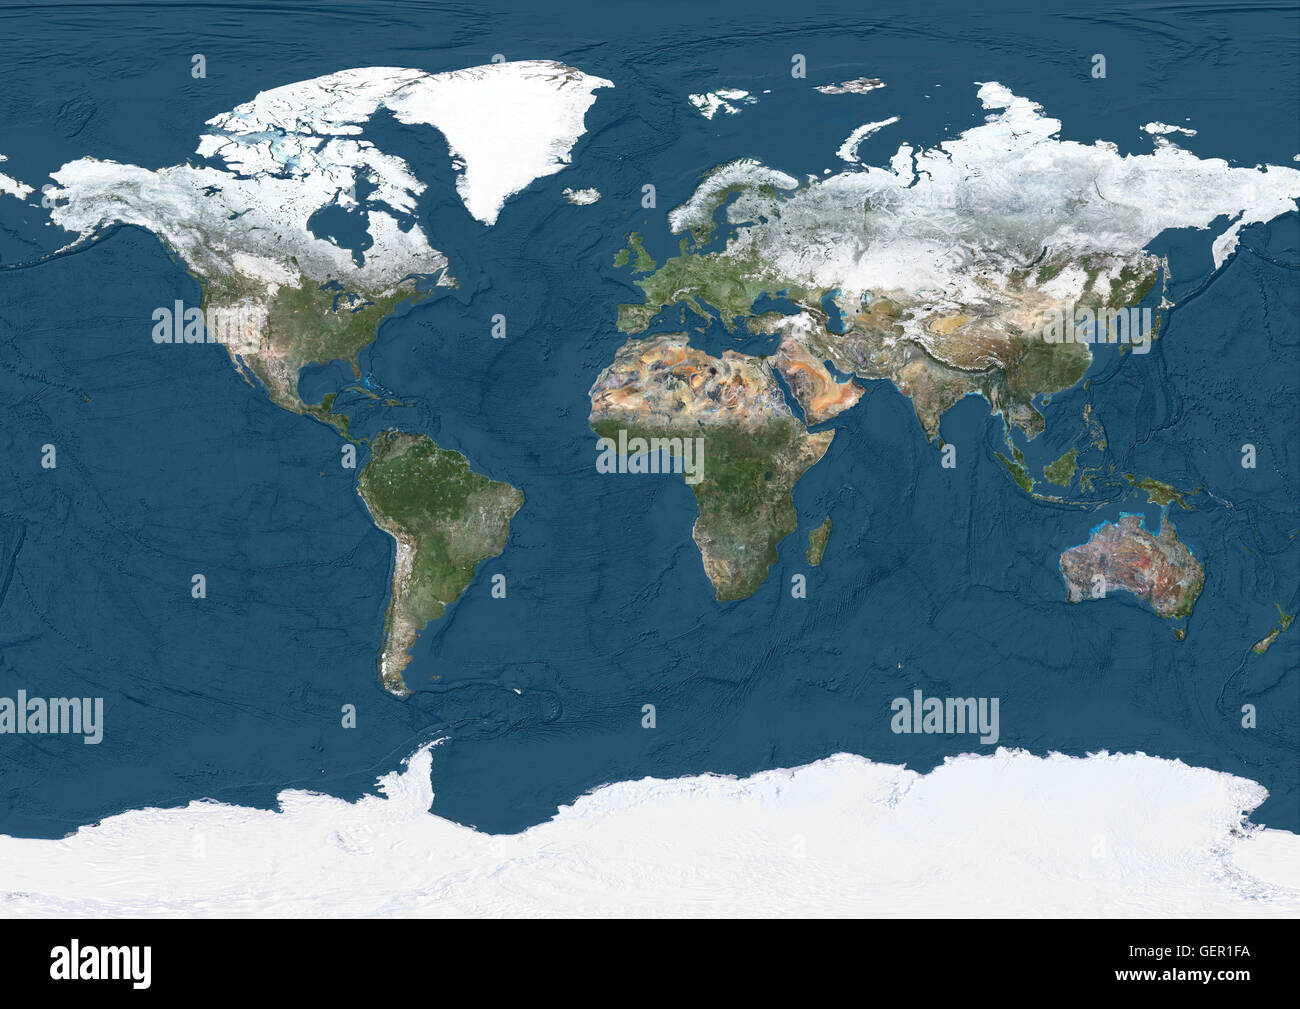 Welt Satelliten-Karte im Winter, mit teilweise Schneedecke und zeigen Tiefen des Ozeans. Dieses Bild wurde aus Daten von Satelliten Landsat 7 & 8 zusammengestellt. Stockfoto